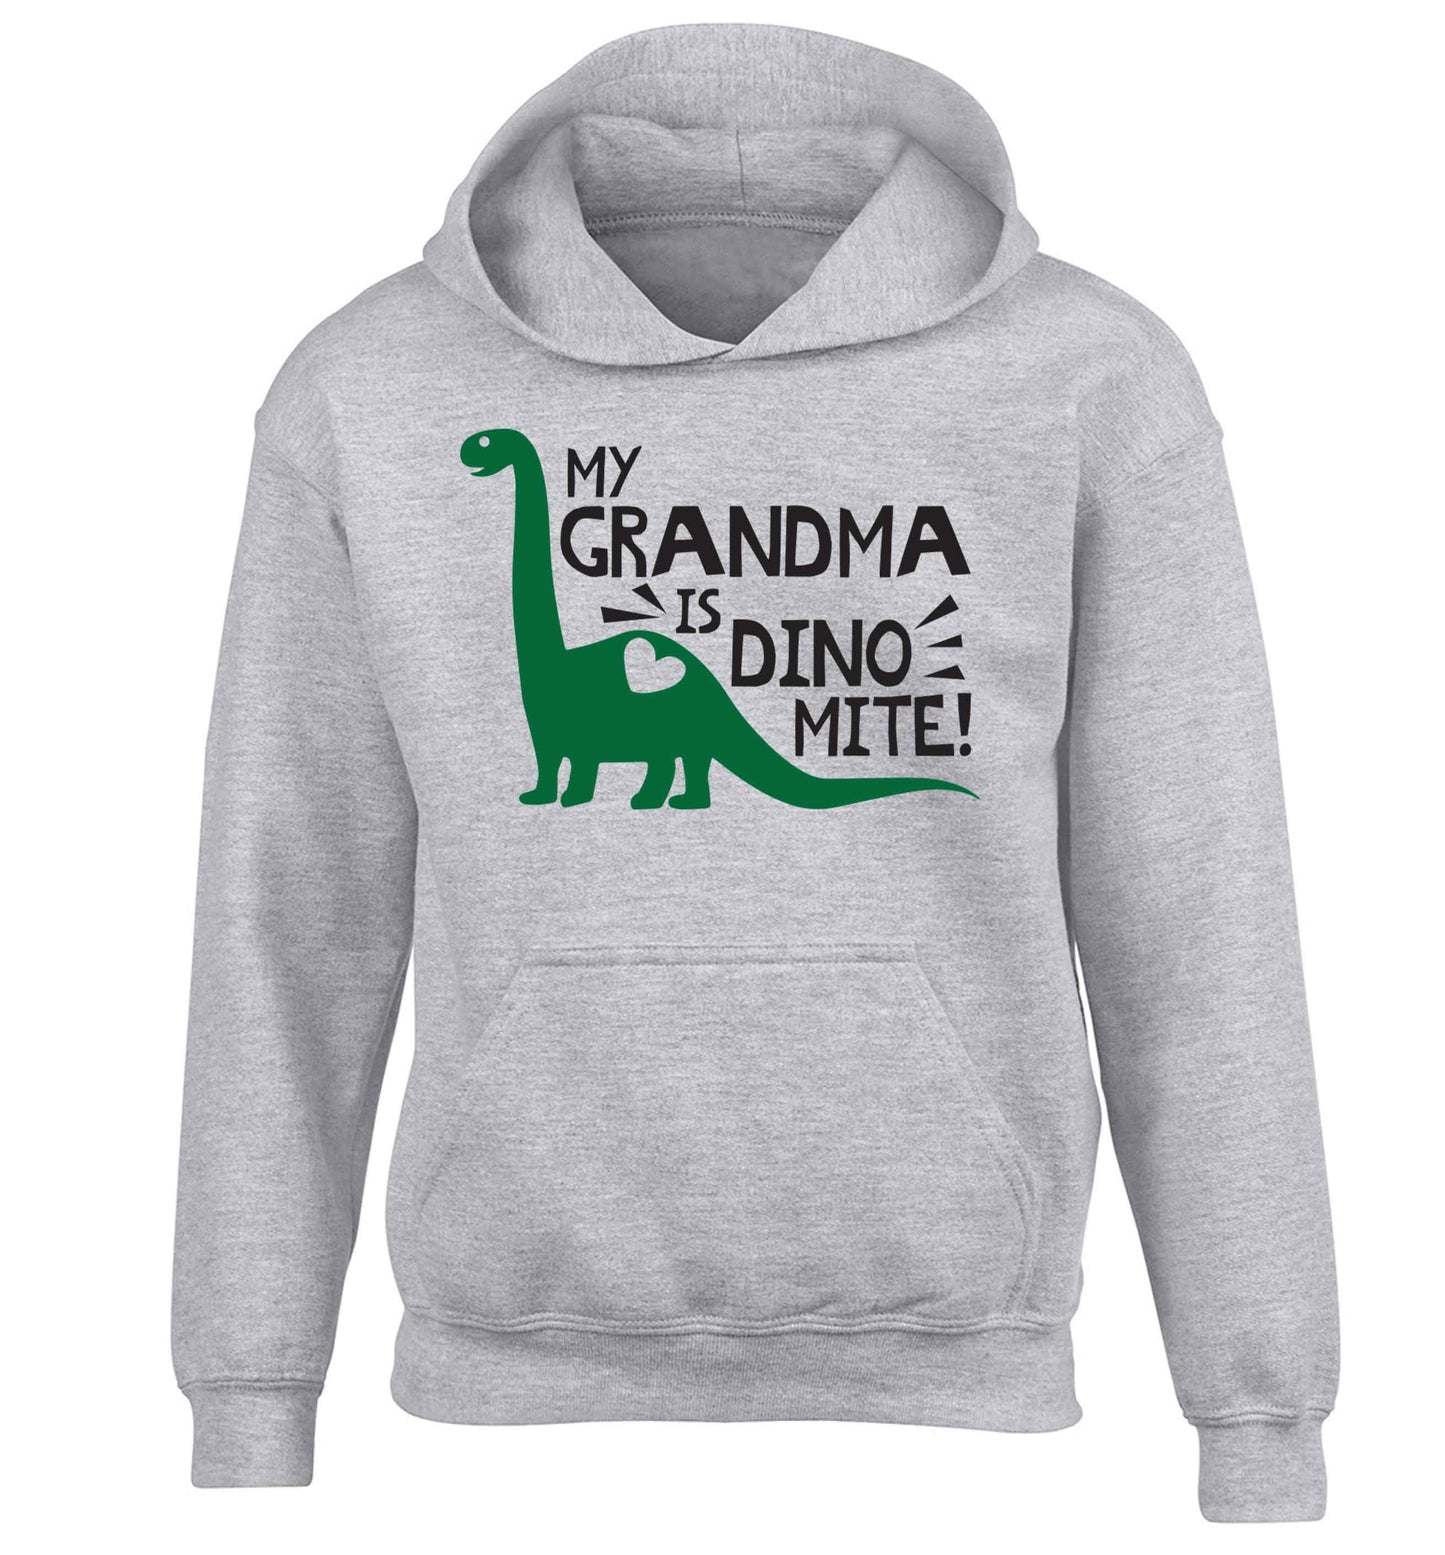 My grandma is dinomite! children's grey hoodie 12-13 Years